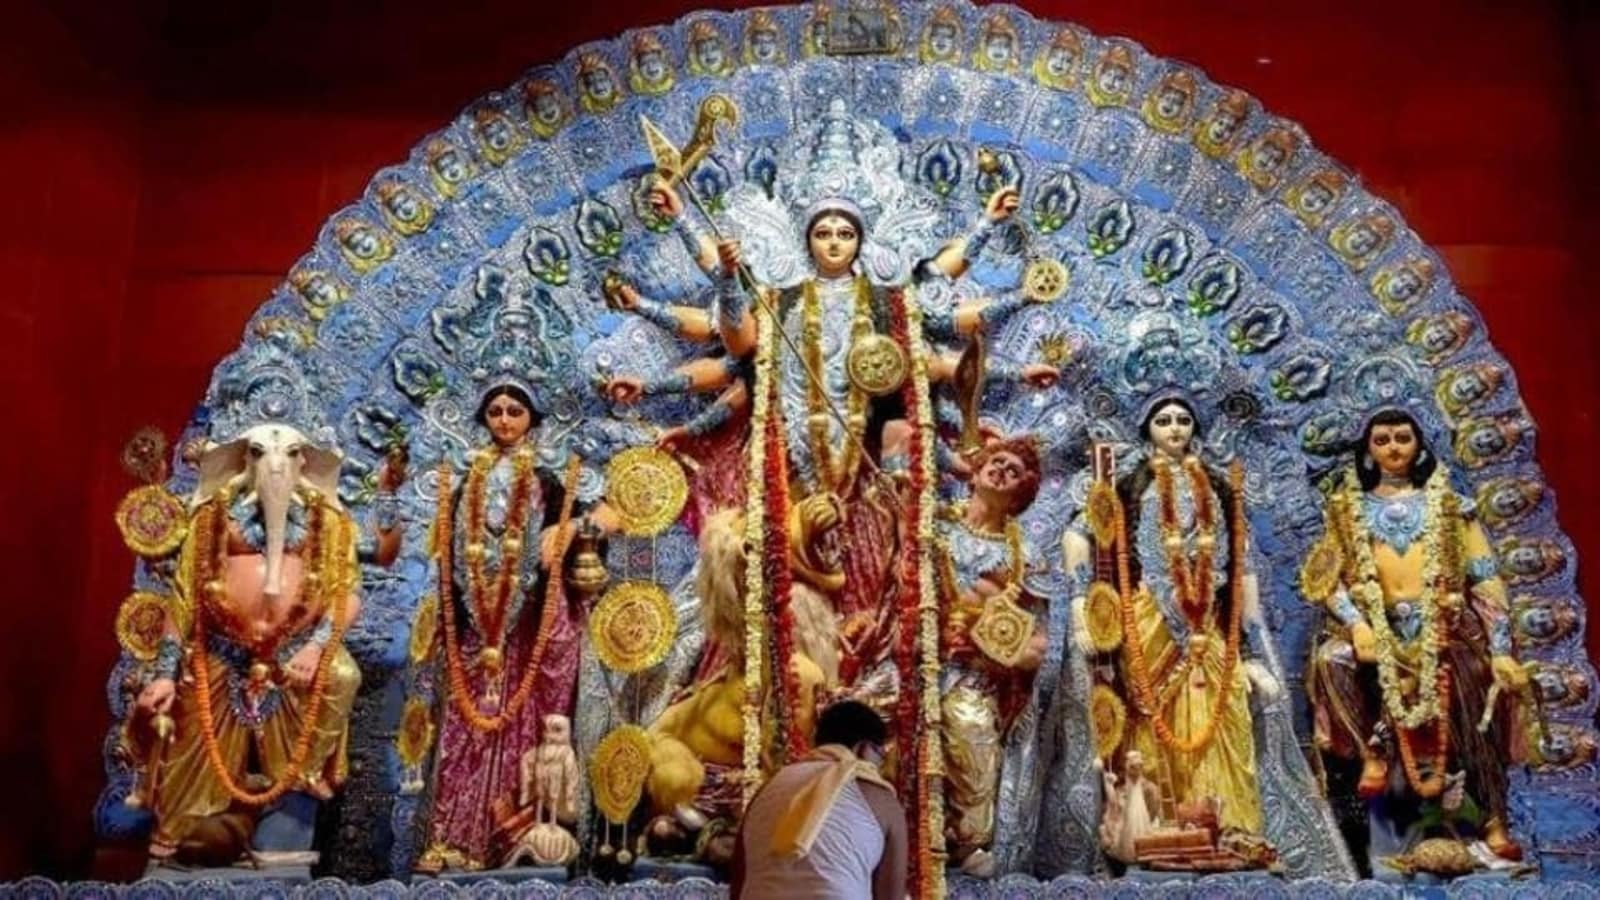 Наваратри — дни божественной матери в индии